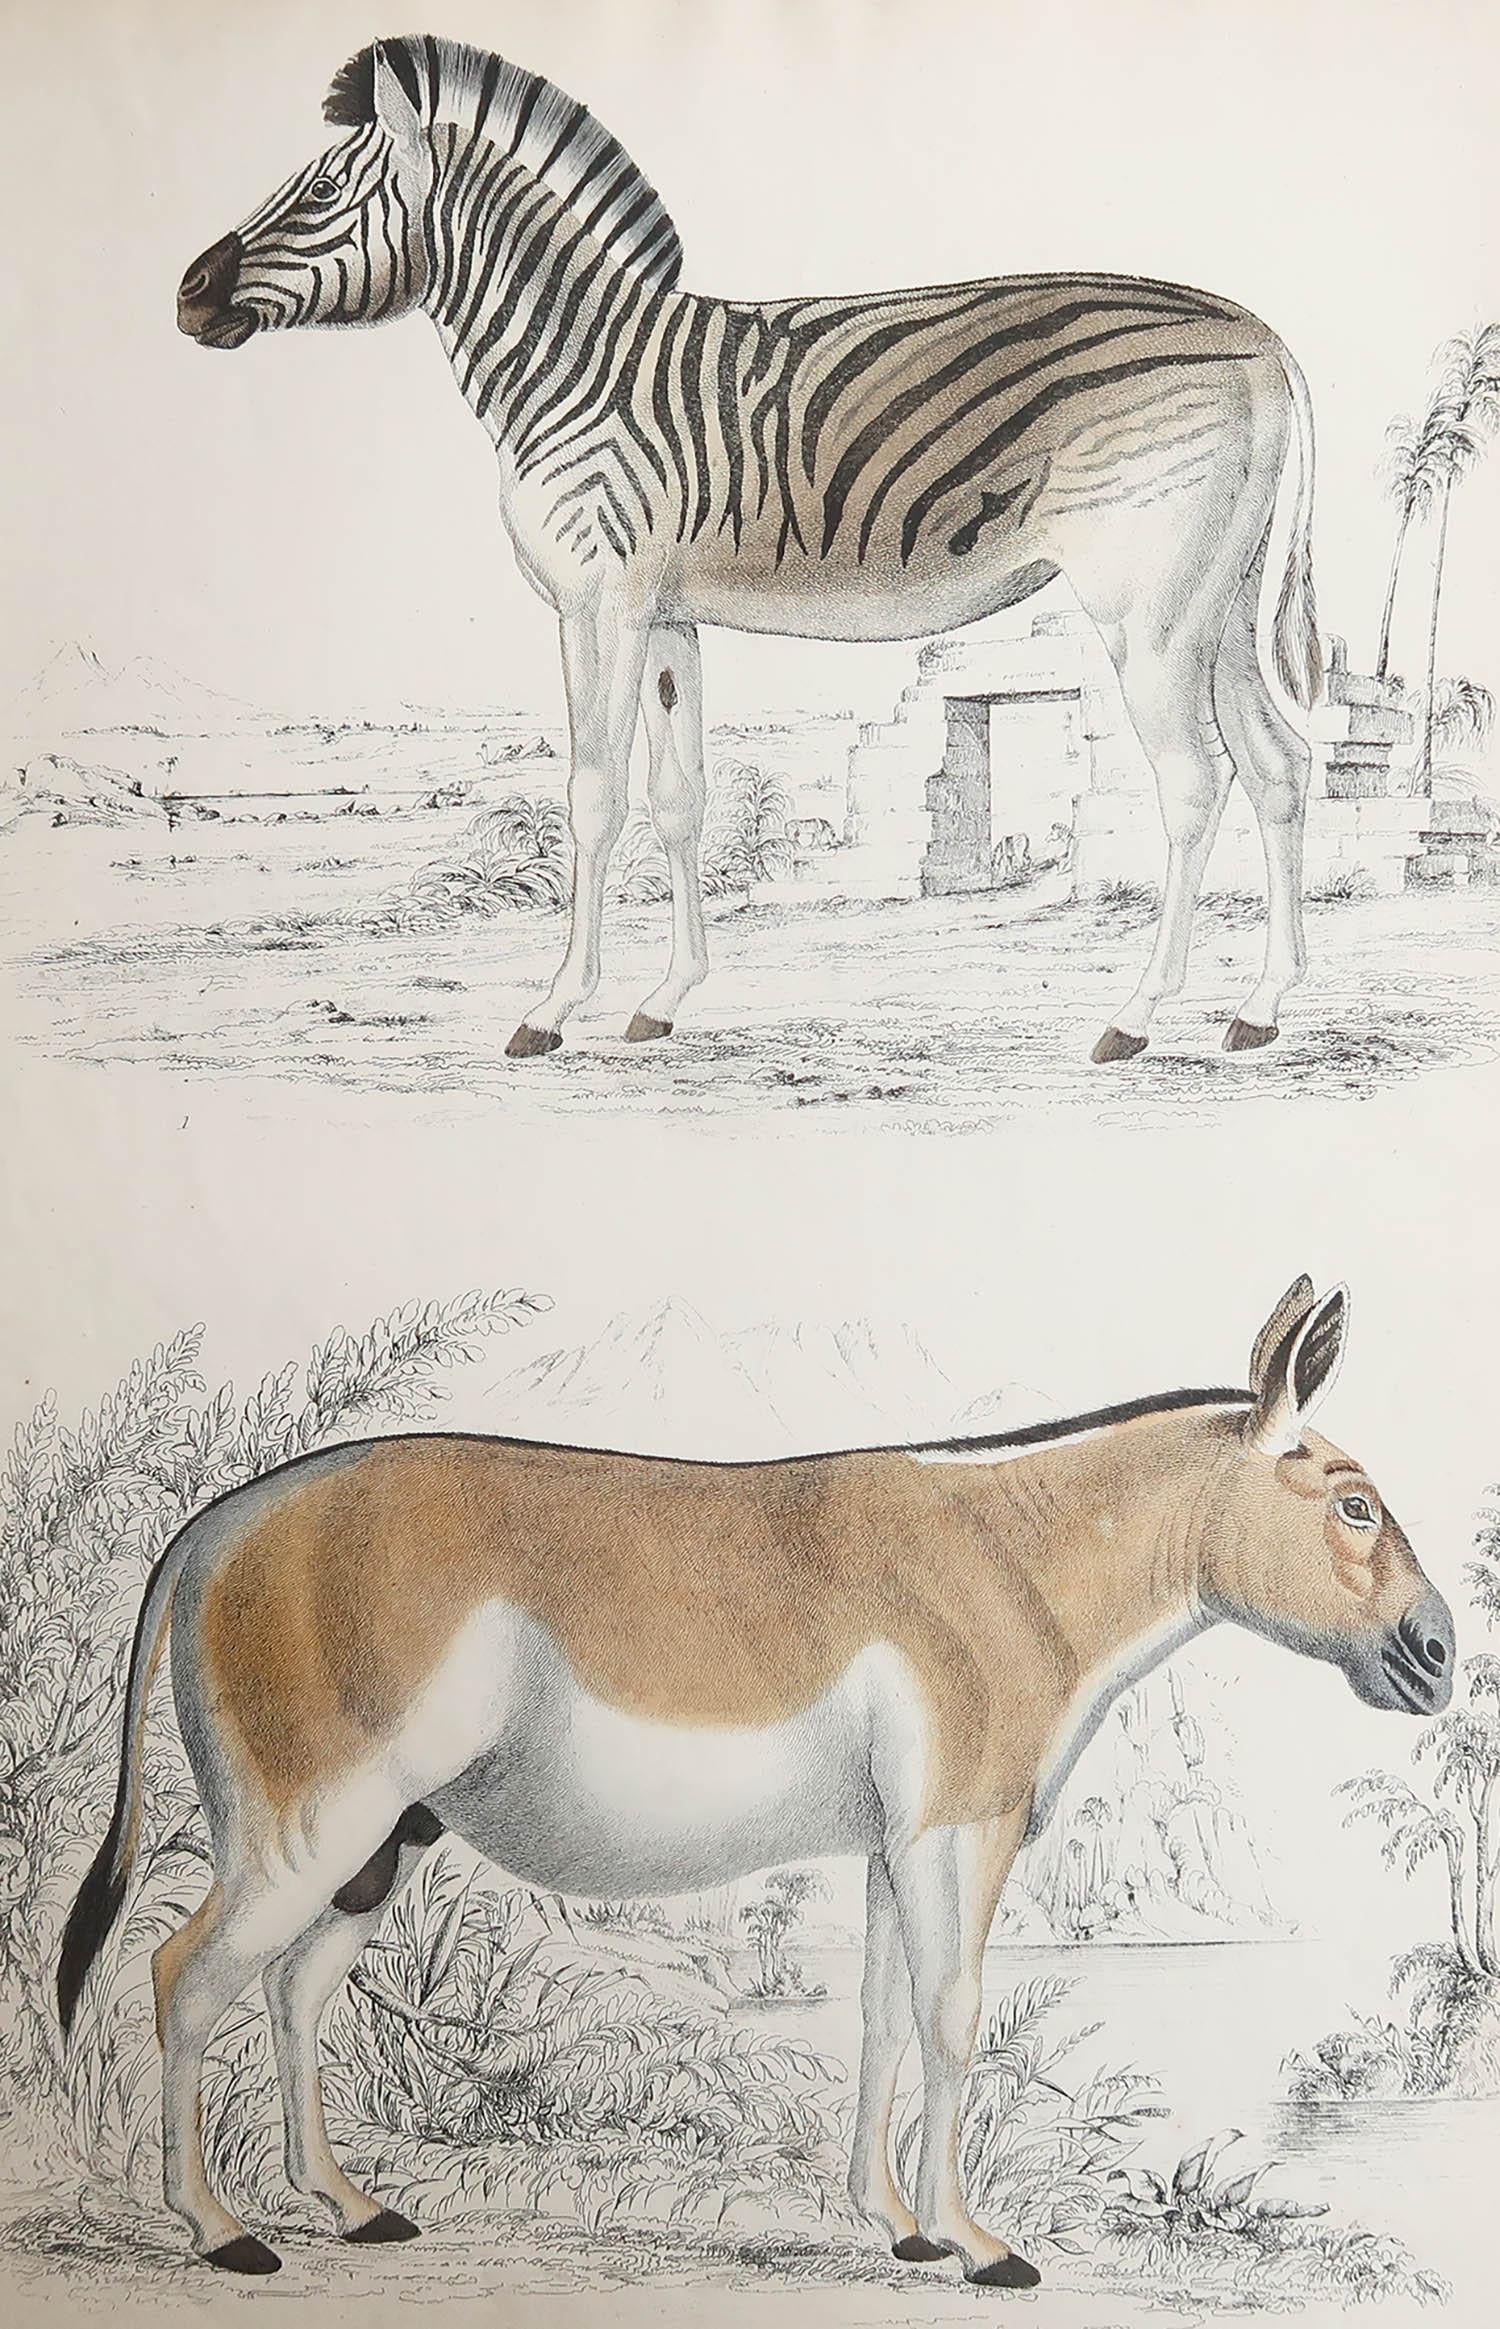 Tolles Bild eines Zebras etc.etc.

Ungerahmt. So haben Sie die Möglichkeit, Ihre eigene Auswahl an Rahmen zu treffen.

Lithographie nach Cpt. Brown mit Original-Handkolorit.

Veröffentlicht um 1835.

Kostenloser Versand.




